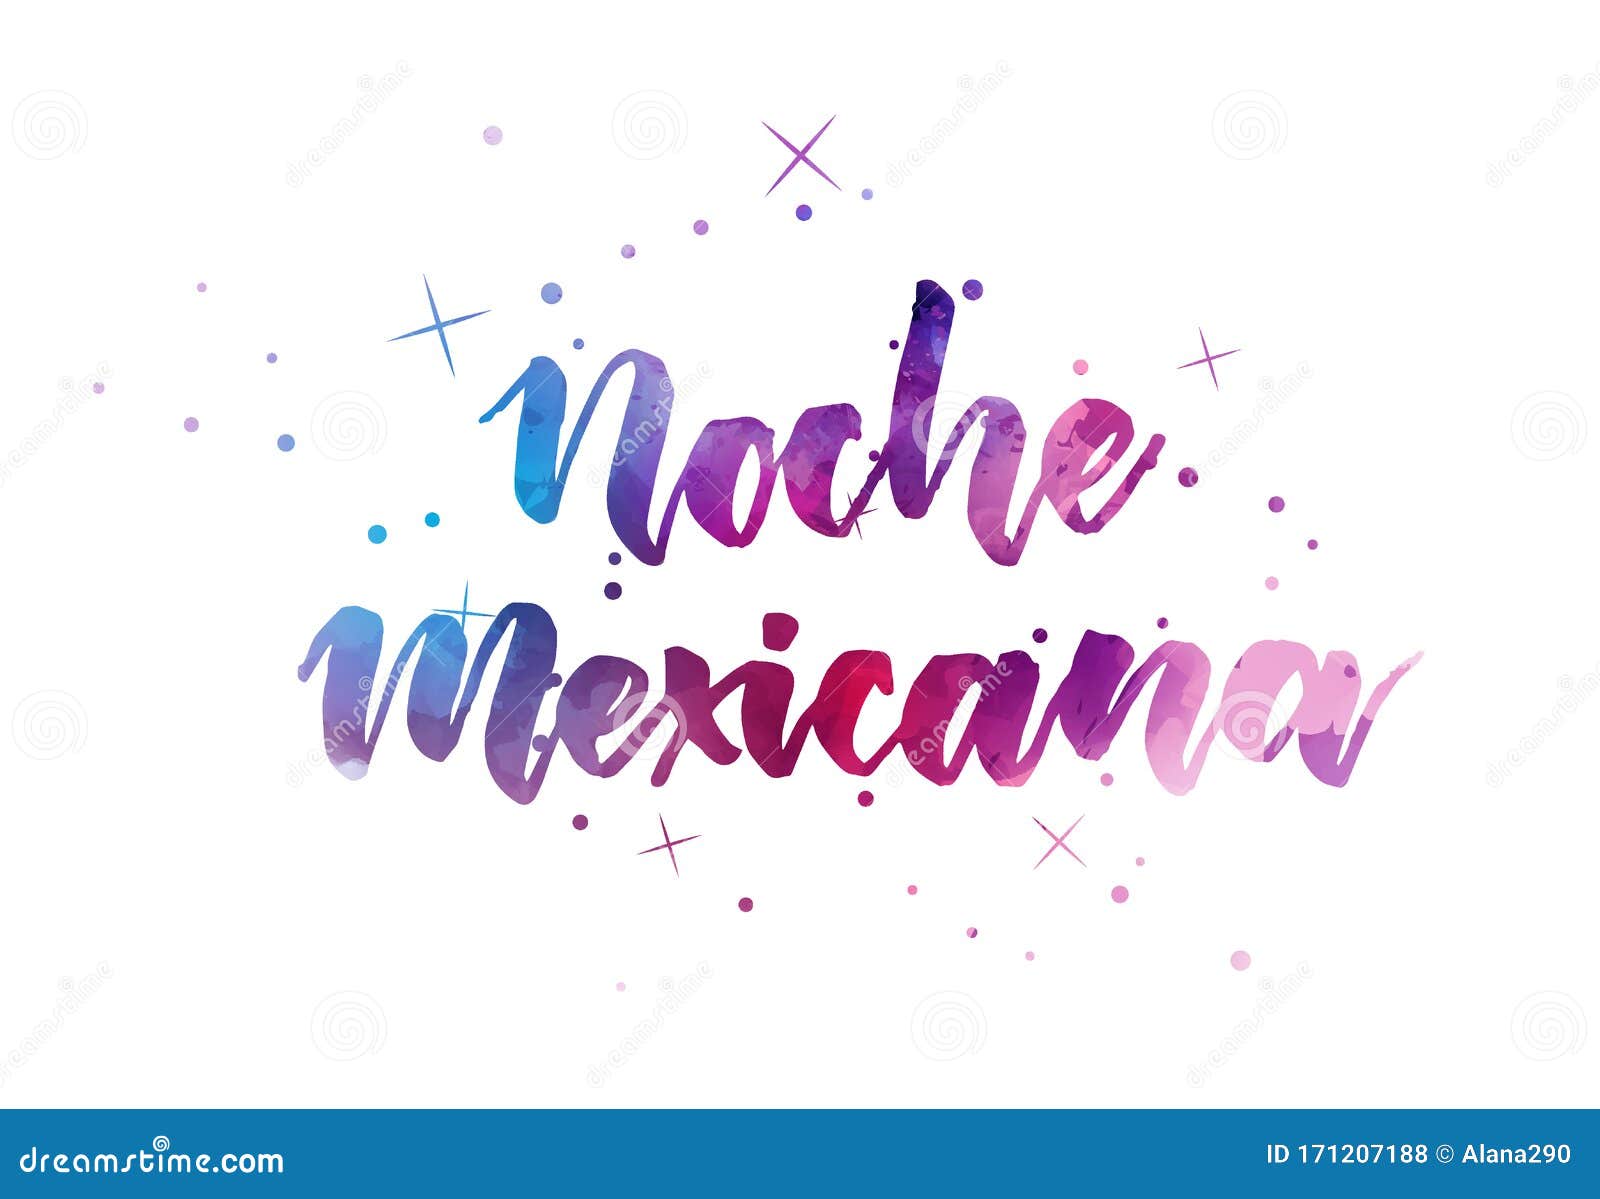 noche mexicana handwritten lettering